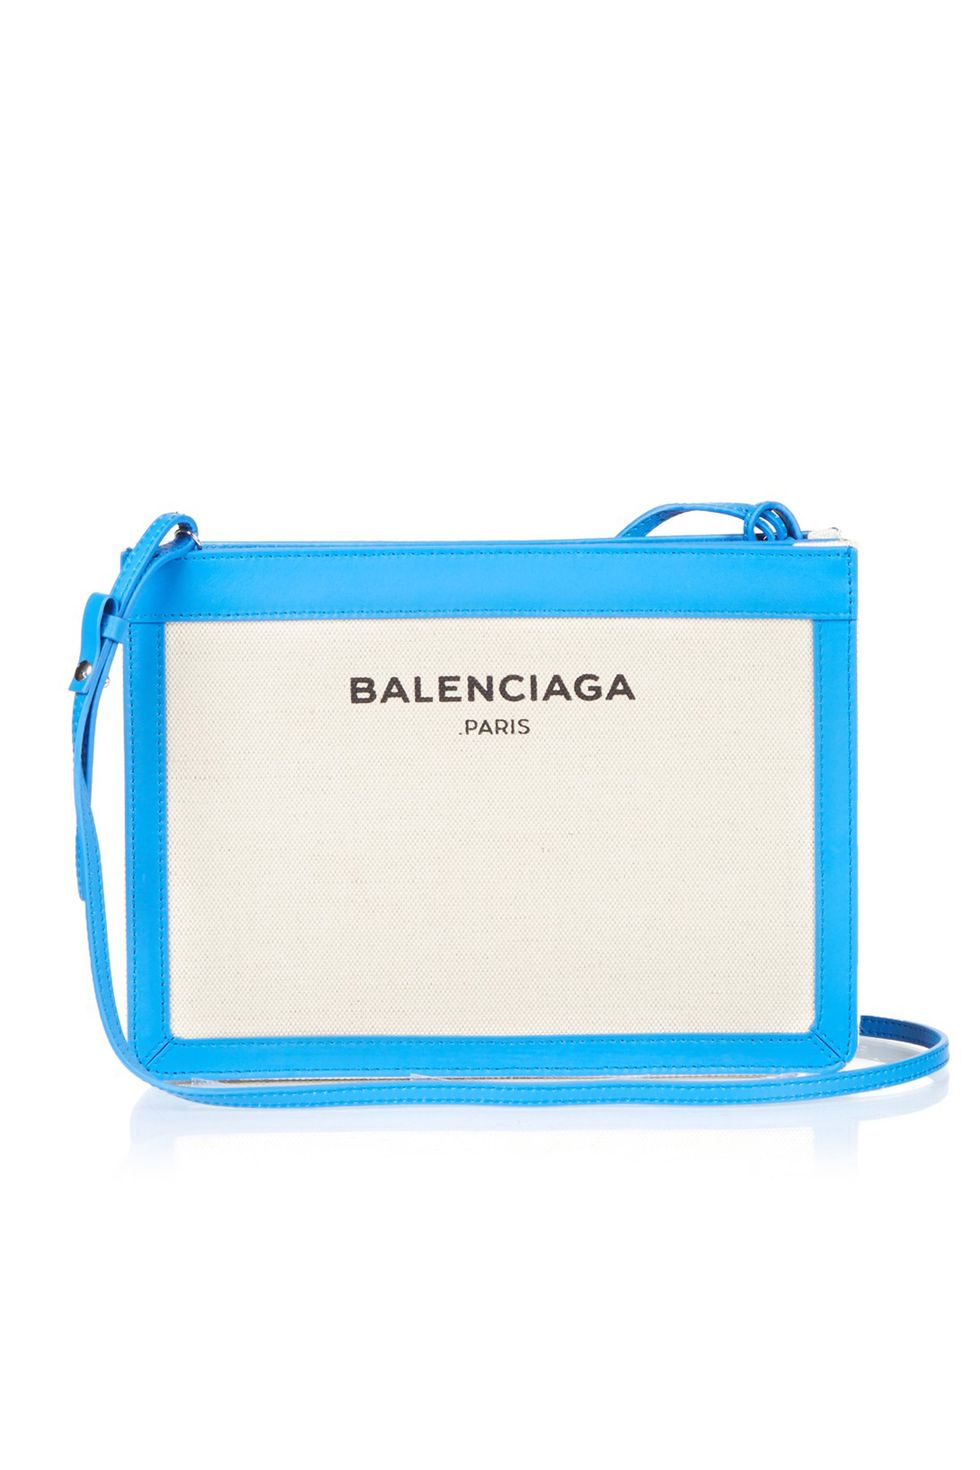 Balenciaga logo bag